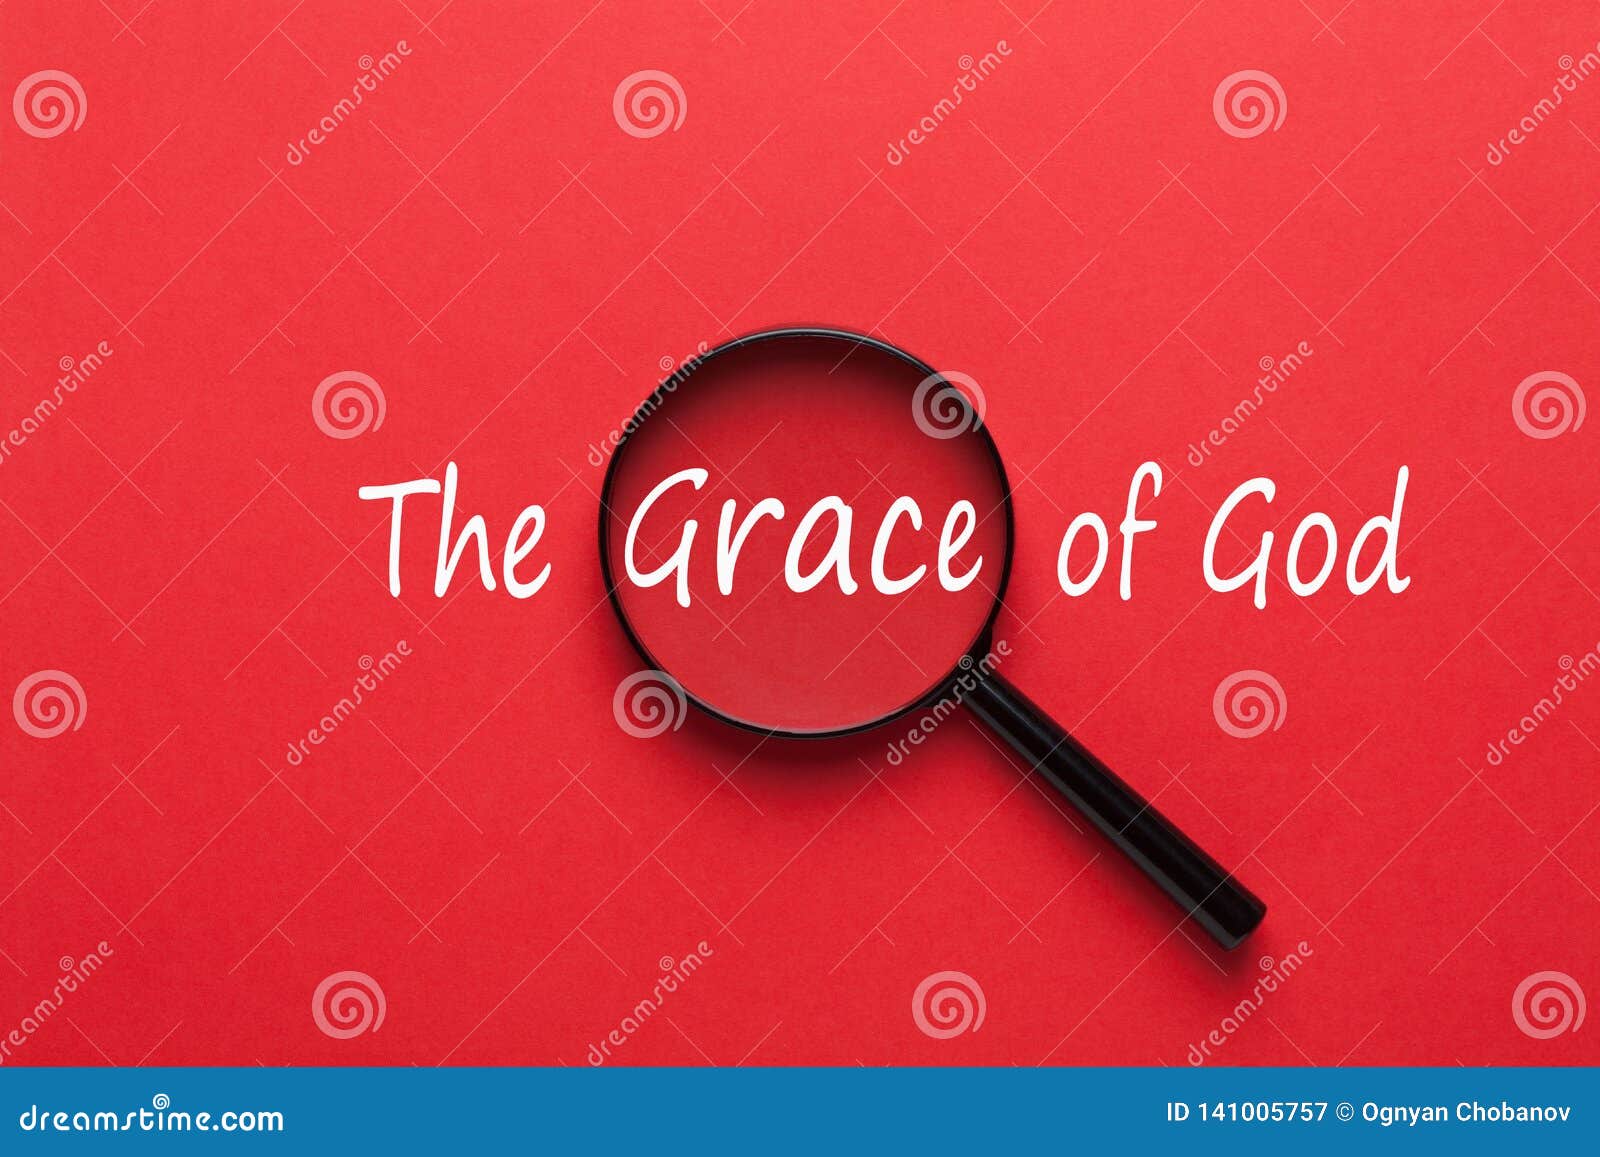 the grace of god